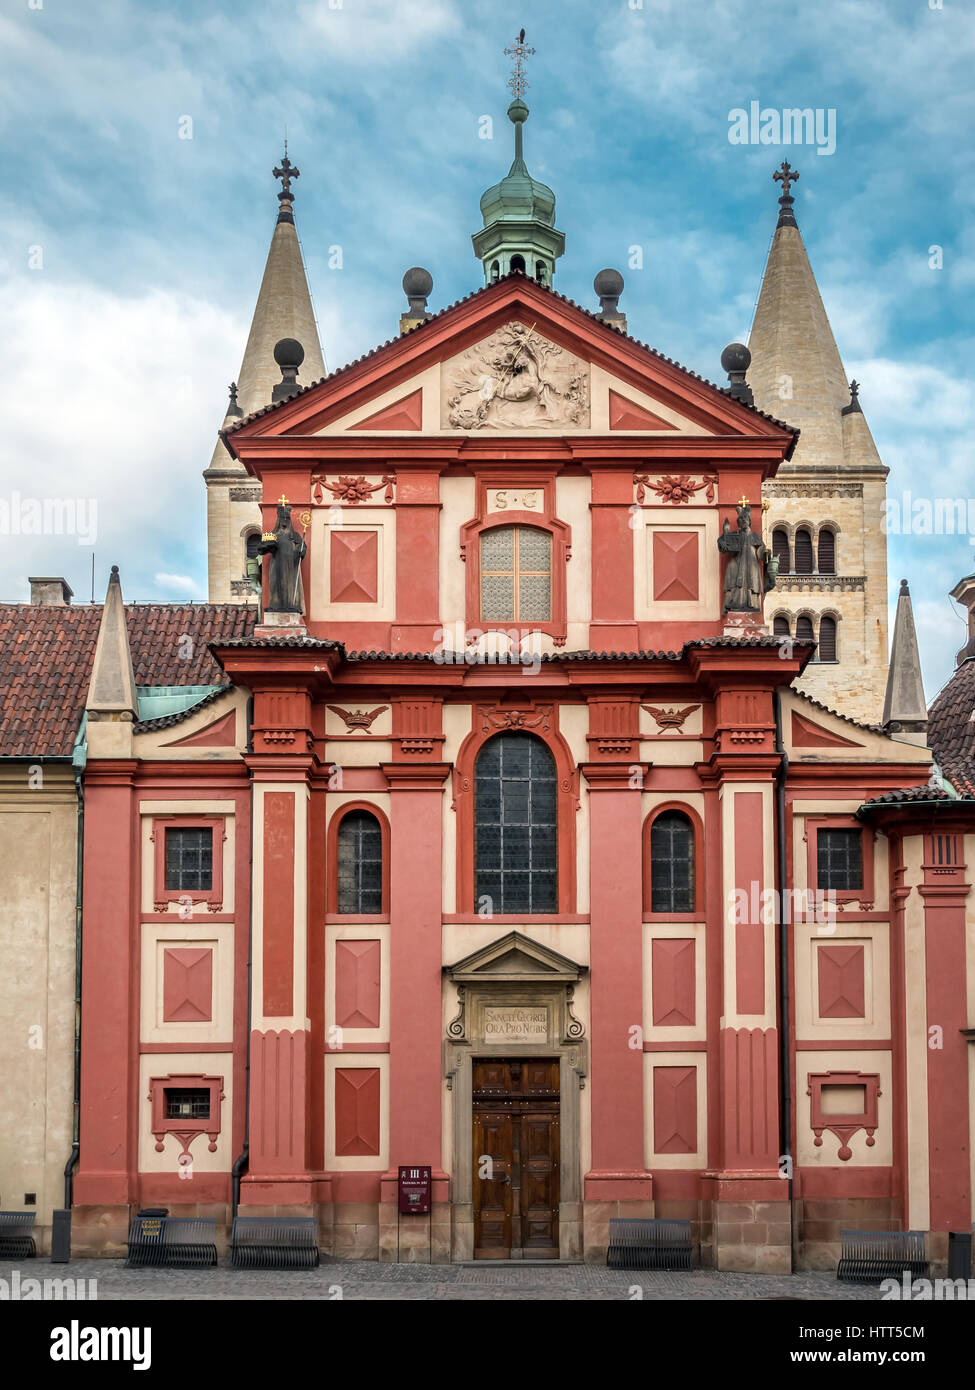 St.-Georgs Basilika auf der Prager Burg in Prag. Die am besten erhaltene romanische Kirche in Prag und das älteste Kirchengebäude in der Prager Burg Stockfoto